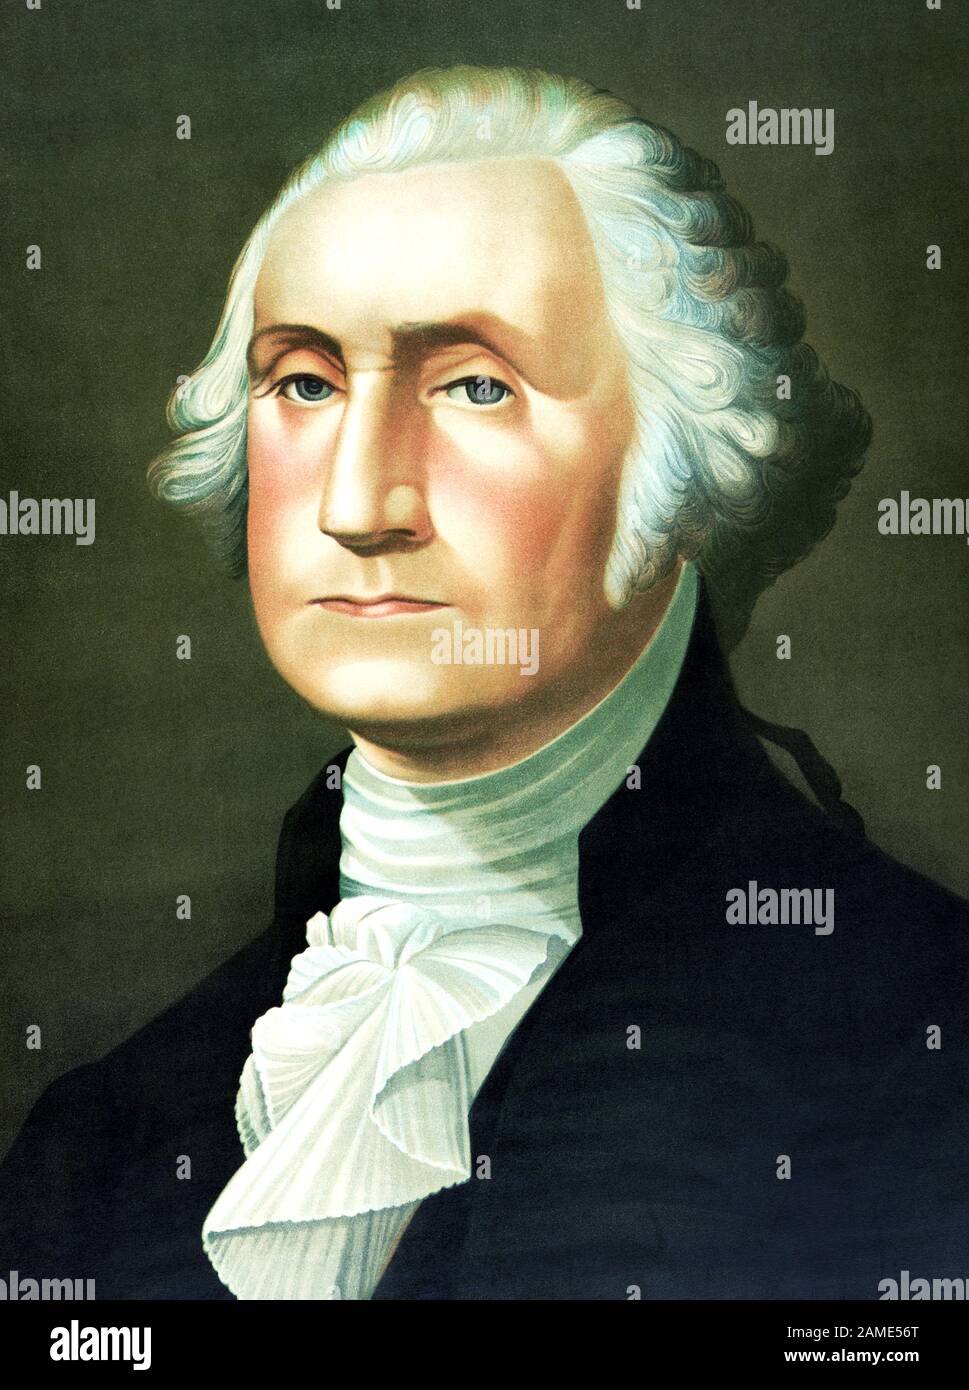 Portrait vintage de George Washington (1732 - 1799) – Commandant de l'Armée continentale dans la guerre révolutionnaire américaine / Guerre d'indépendance (1775 - 1783) et le premier Président des États-Unis (1789 - 1797). Imprimé vers 1896 par J Hoover & son. Banque D'Images